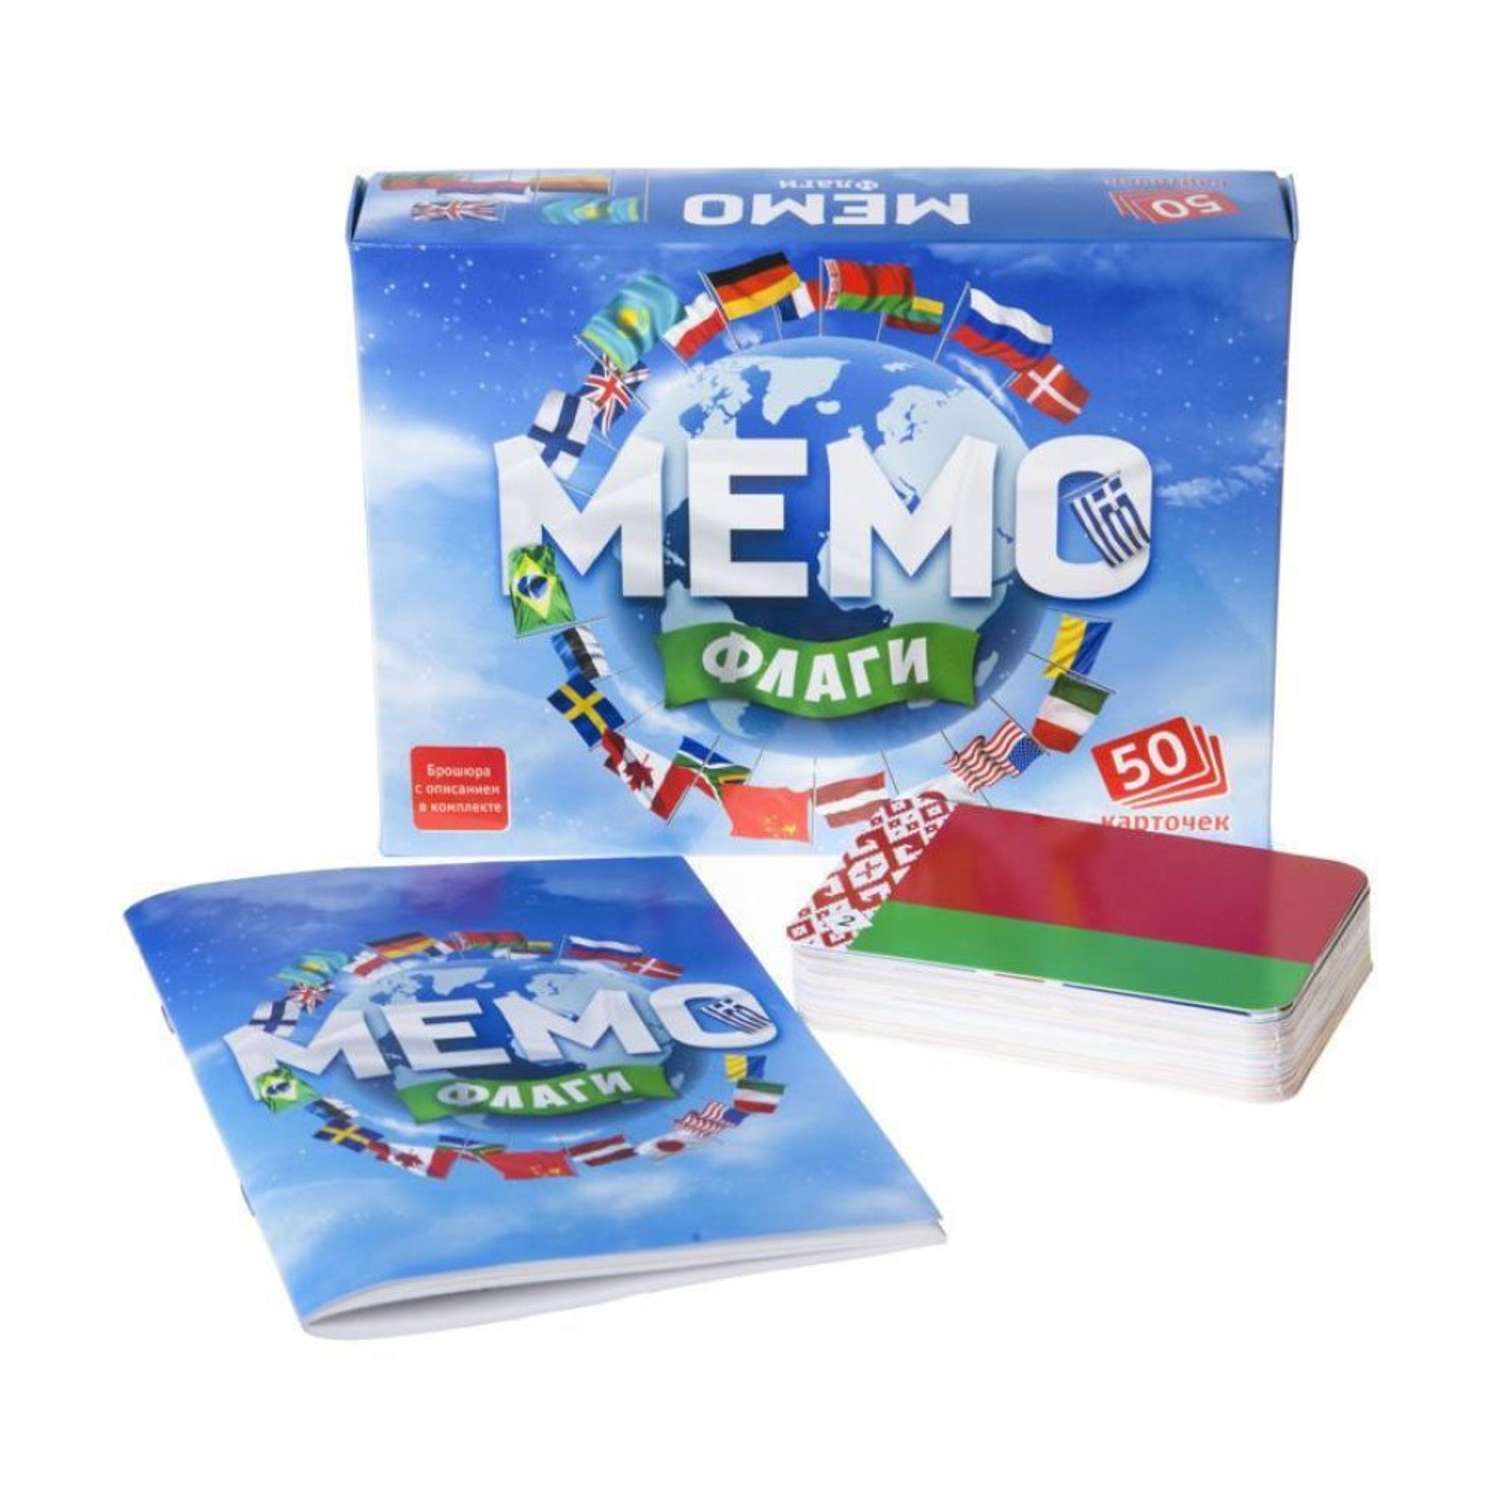 Настольные развивающие игры Нескучные игры для детей для всей семьи Мемо Флаги 50 карточек - 3 набора - фото 6